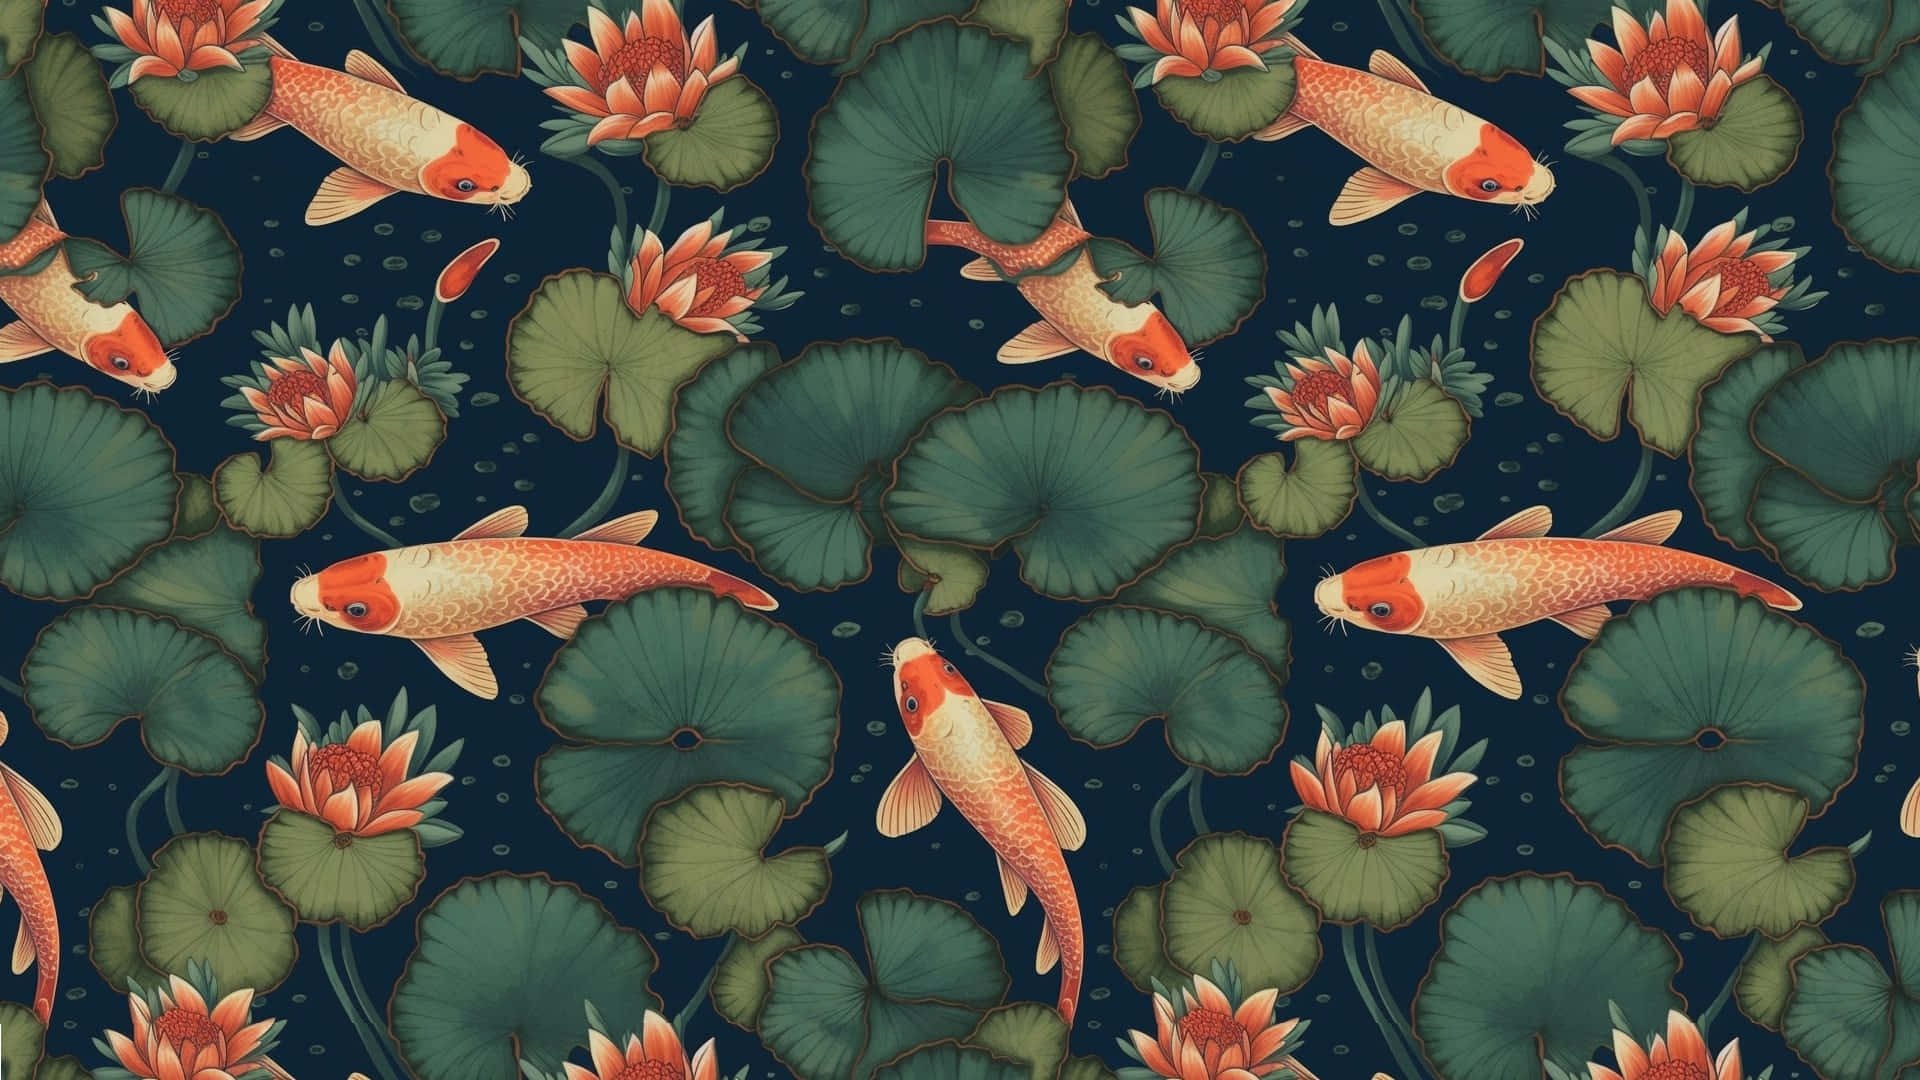 Koi Fishand Lotus Pond Pattern Wallpaper